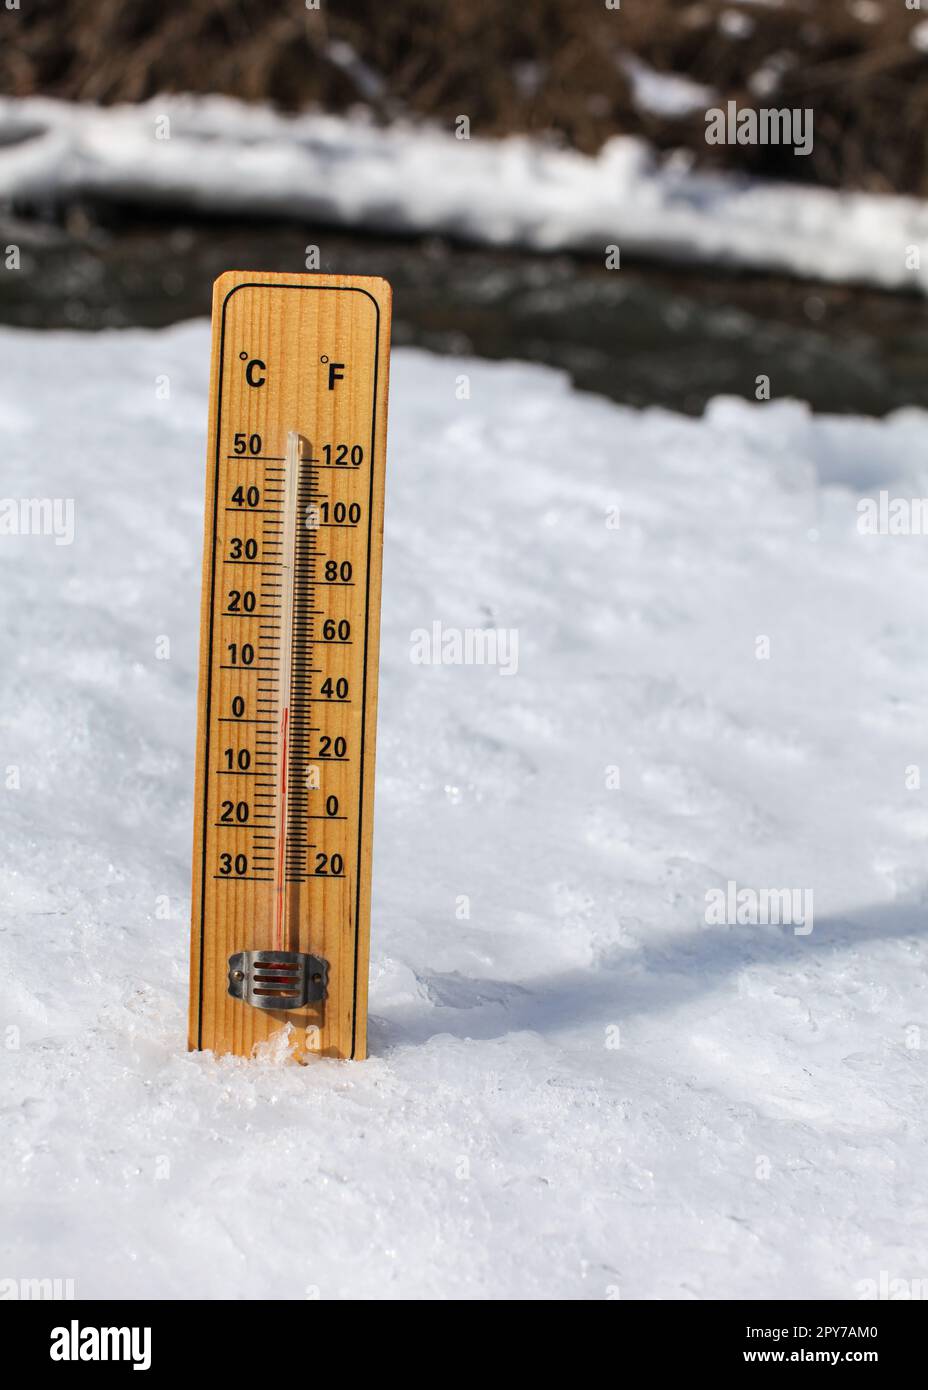 Holzthermometer steht auf Eis auf teilweise gefrorenem Fluss, Sonne scheint, zeigt +3 Grad. Bild zur Veranschaulichung der Winterferien, des langsamen Schneetauens und der kommenden wärmeren Tage Stockfoto